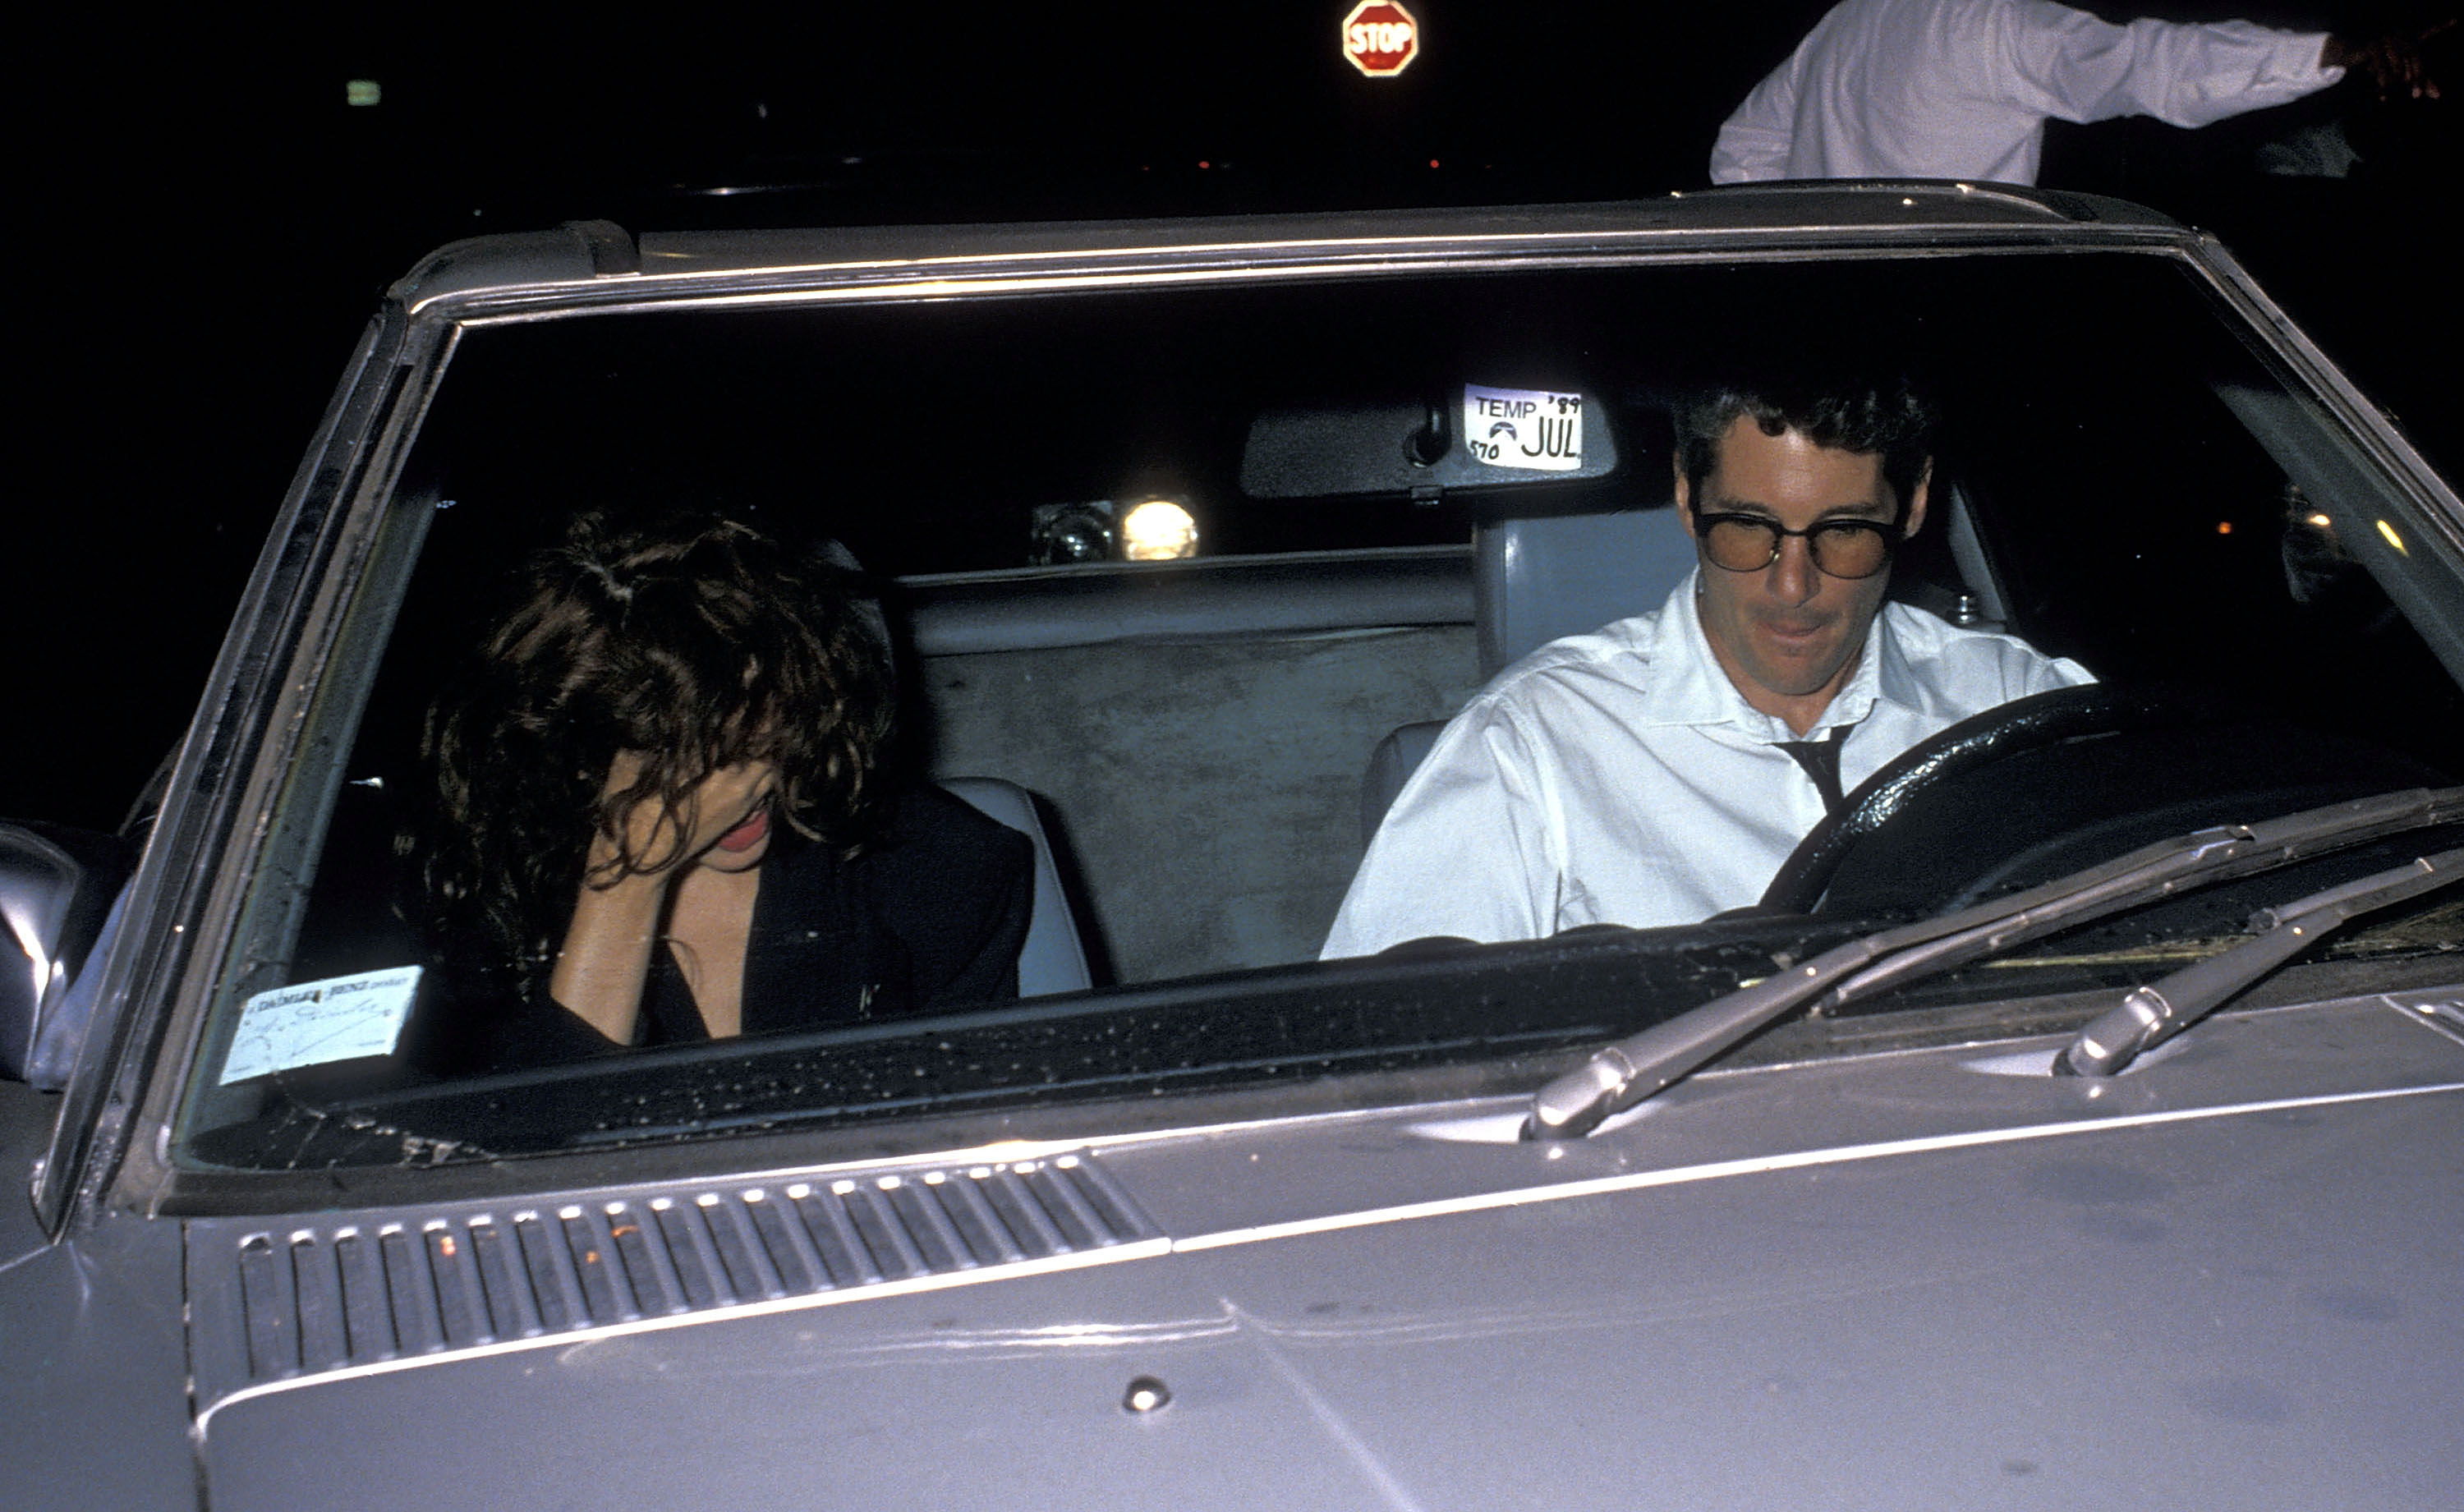 L'actrice Julia Roberts et l'acteur Richard Gere assistent à la fête du 37e anniversaire de Herb Ritts le 12 août 1989 dans un club privé à Hollywood, en Californie. | Source : Getty Images